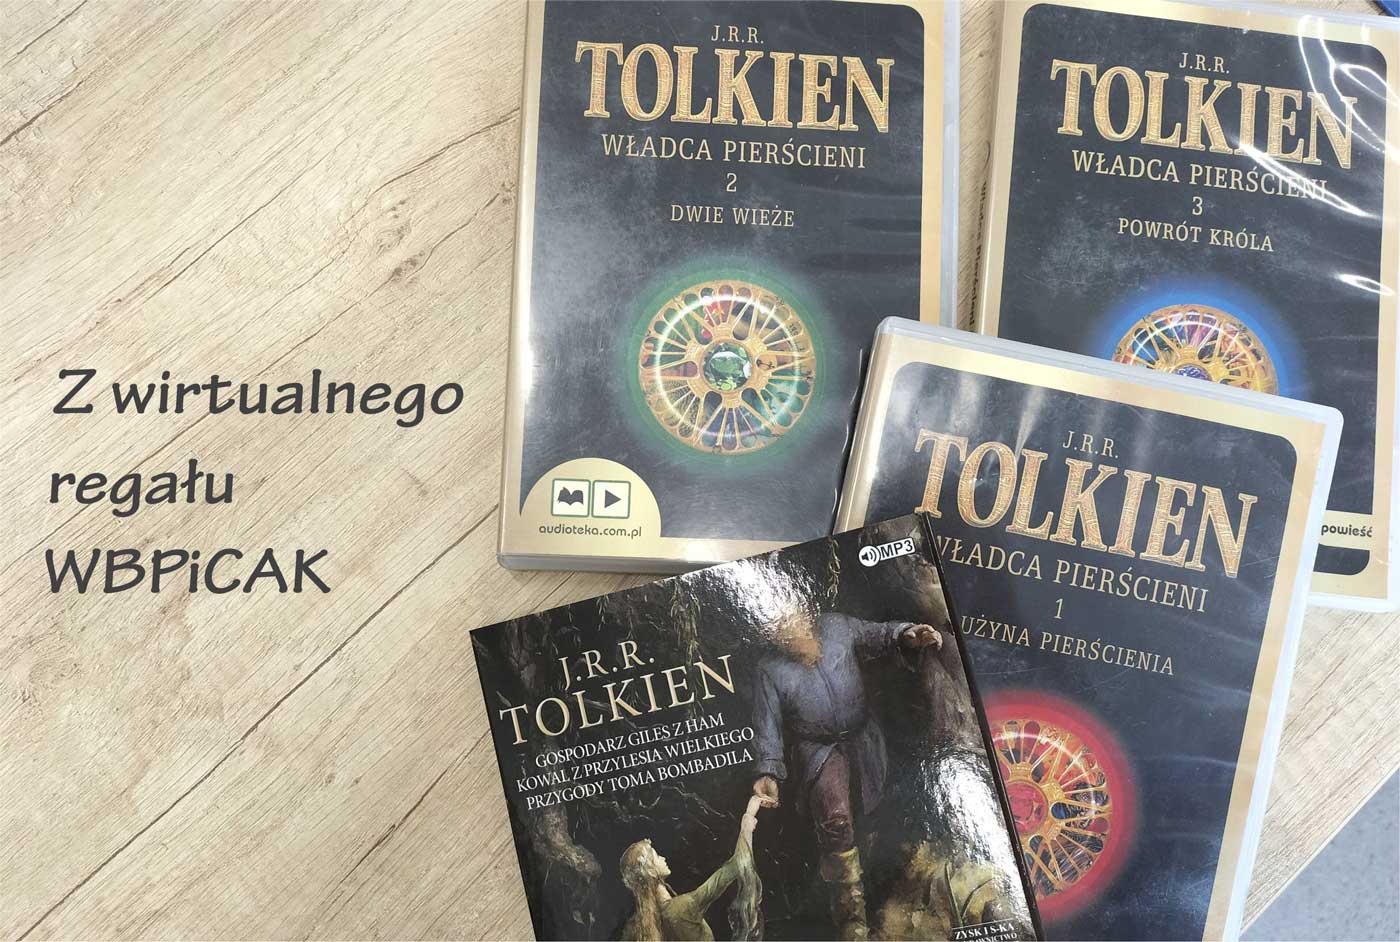 z lewej napis: Z wirtualnego regału WBPiCAK; z prawej zdjęcie czterech książek Tolkiena z ciemnymi okładkami